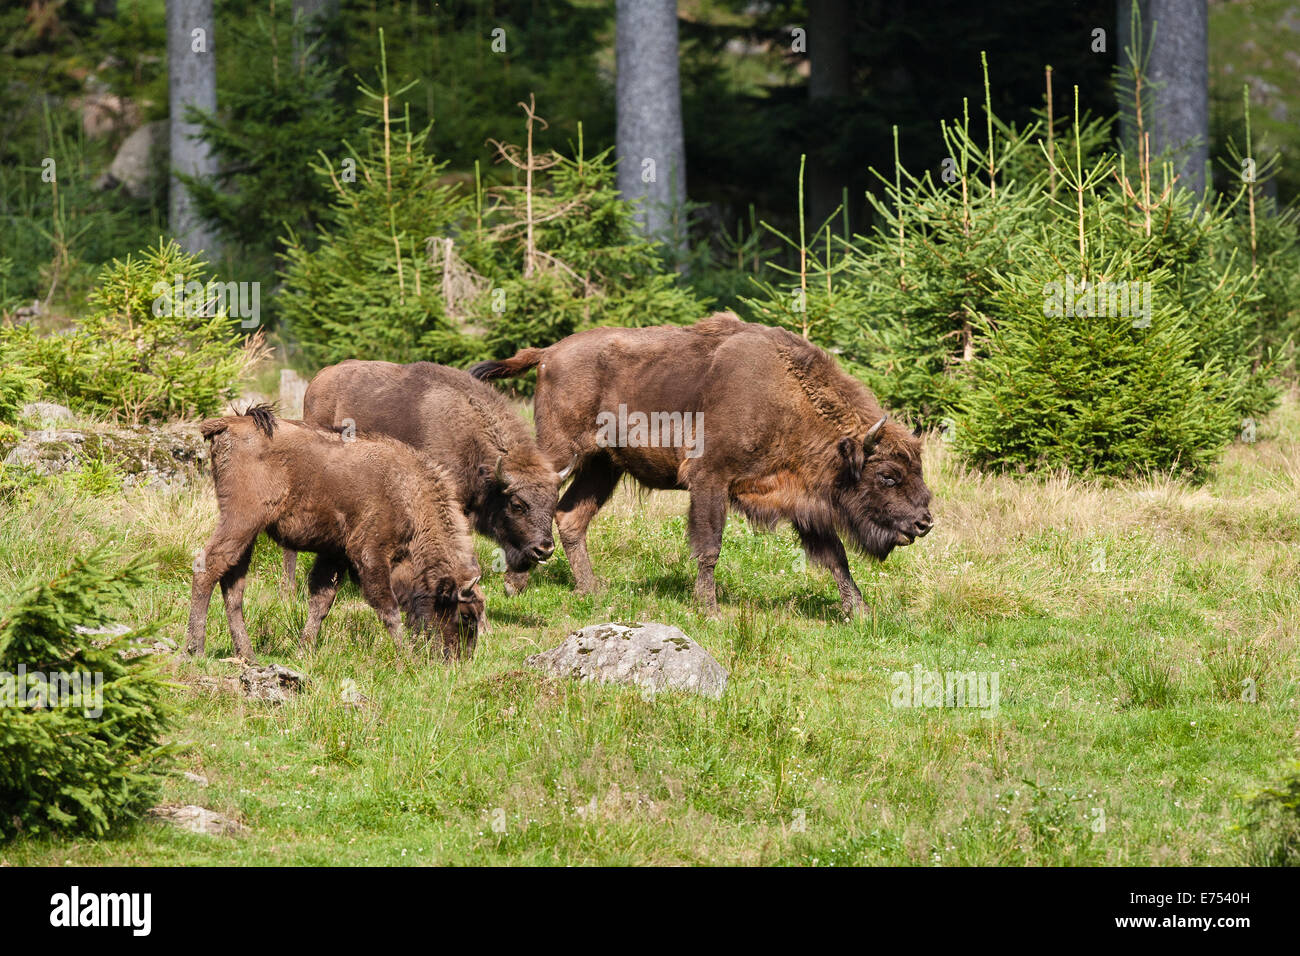 Bisonte Europeo cautivo en Alemania Foto de stock